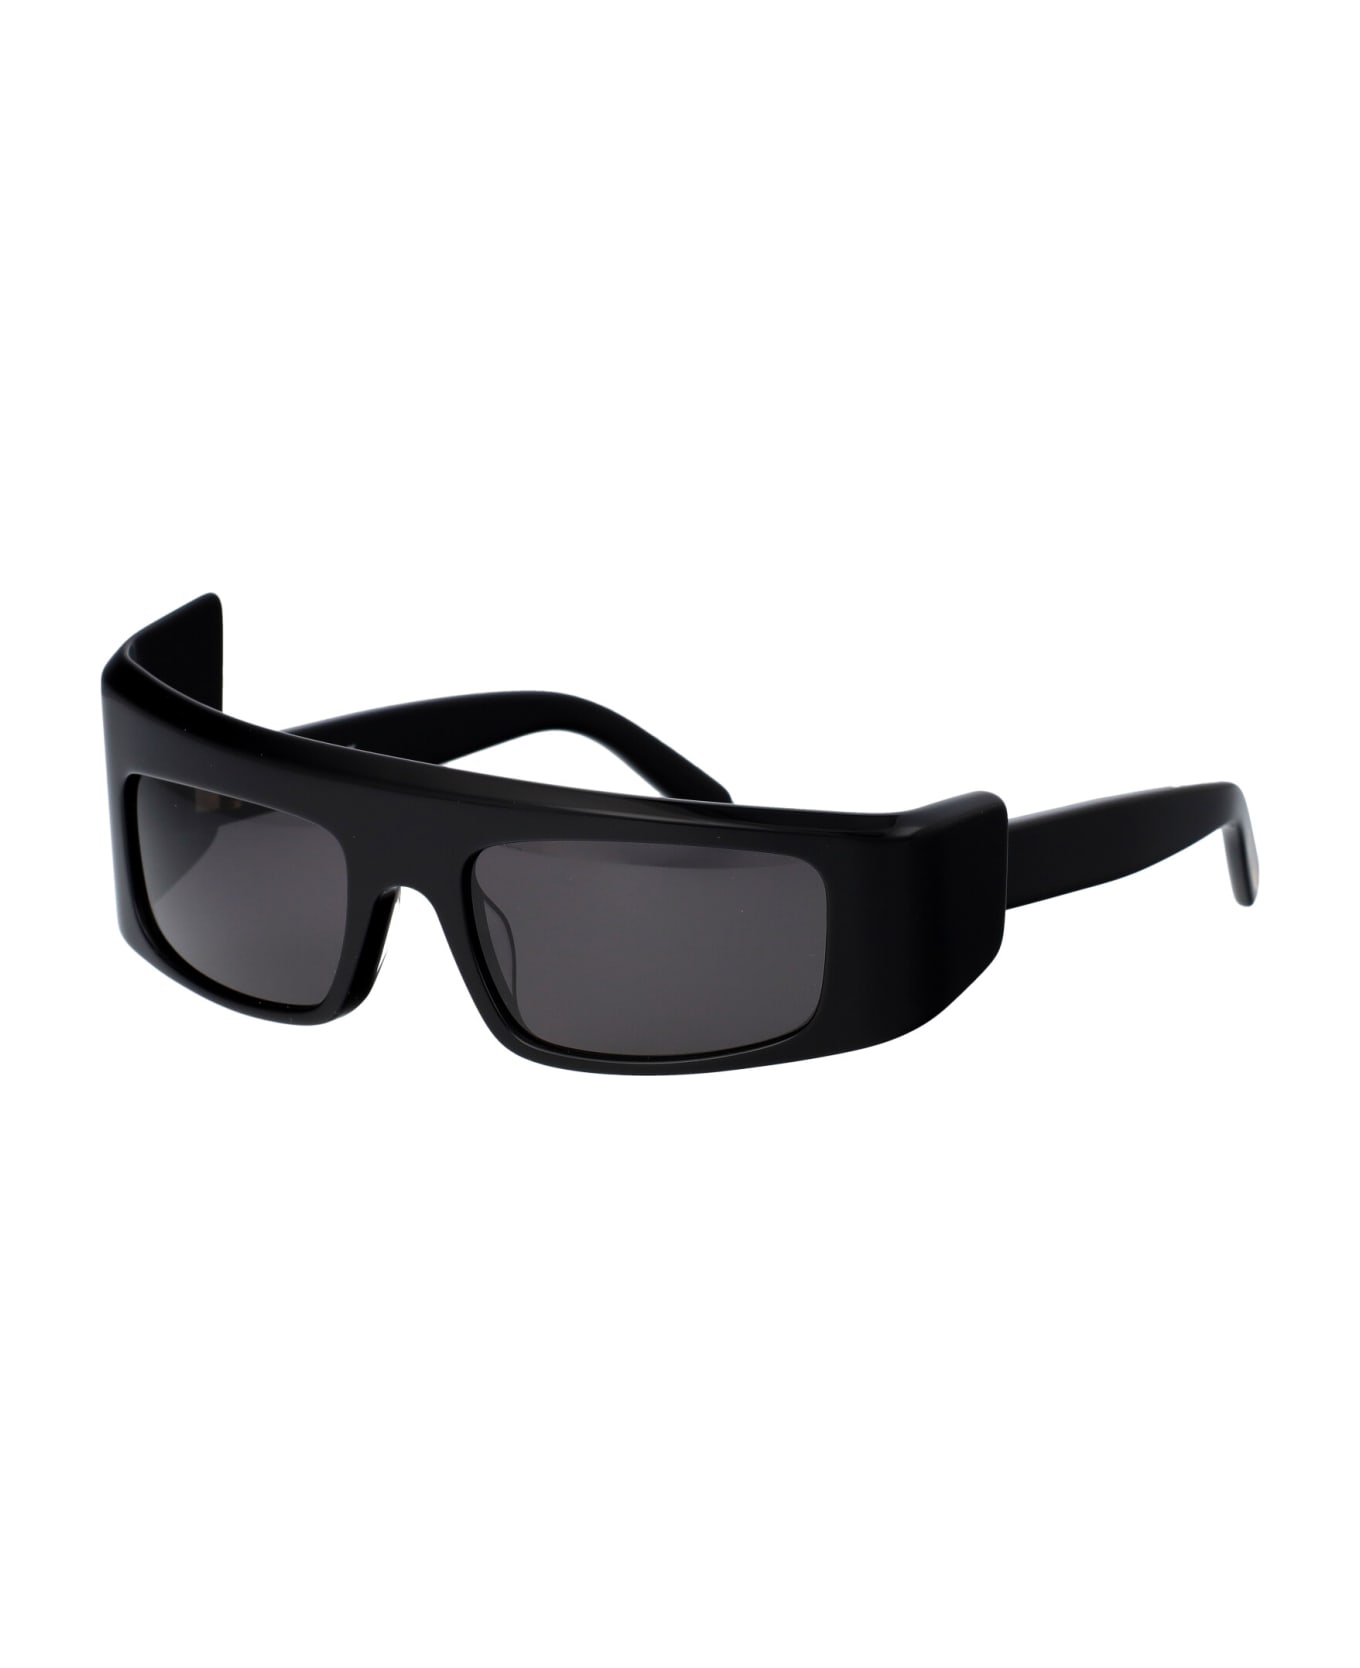 GCDS Gd0043 Sunglasses - 01A Nero Lucido/Fumo